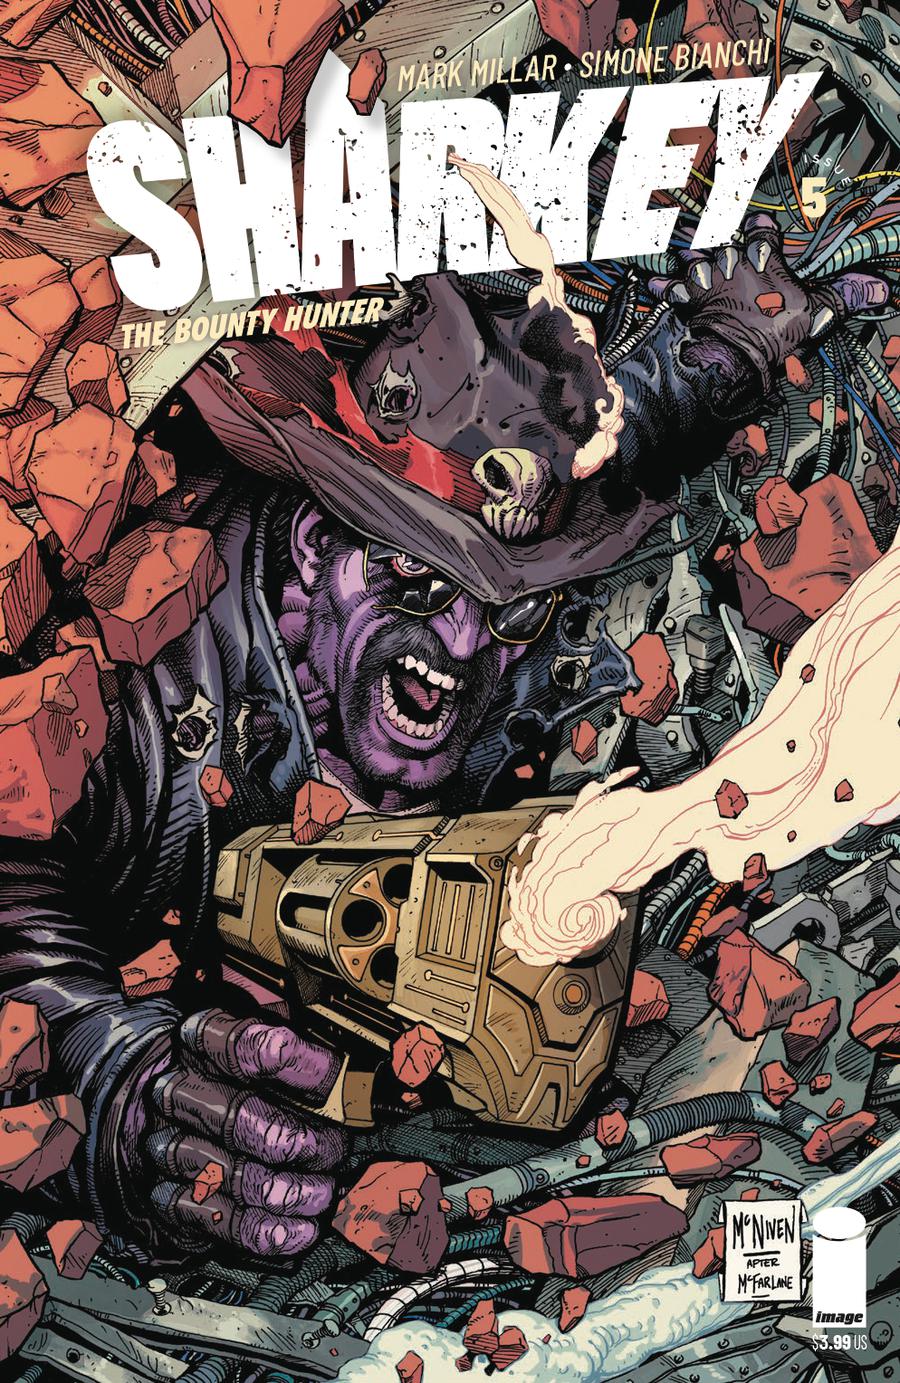 Sharkey The Bounty Hunter #5 Cover C Variant Steve McNiven Cover